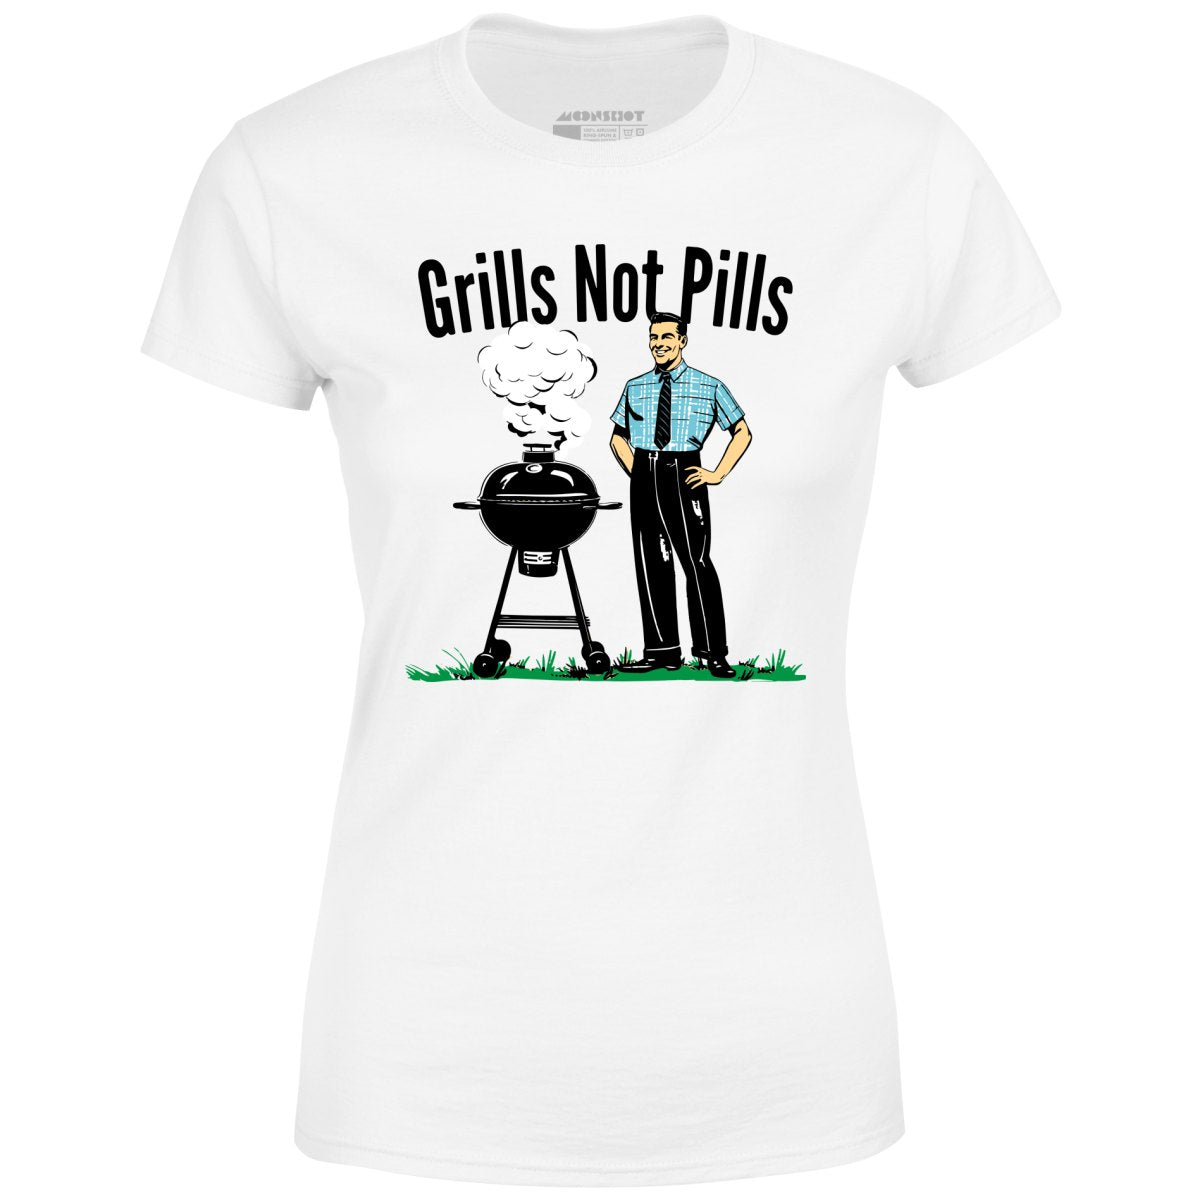 Grills Not Pills - Women's T-Shirt